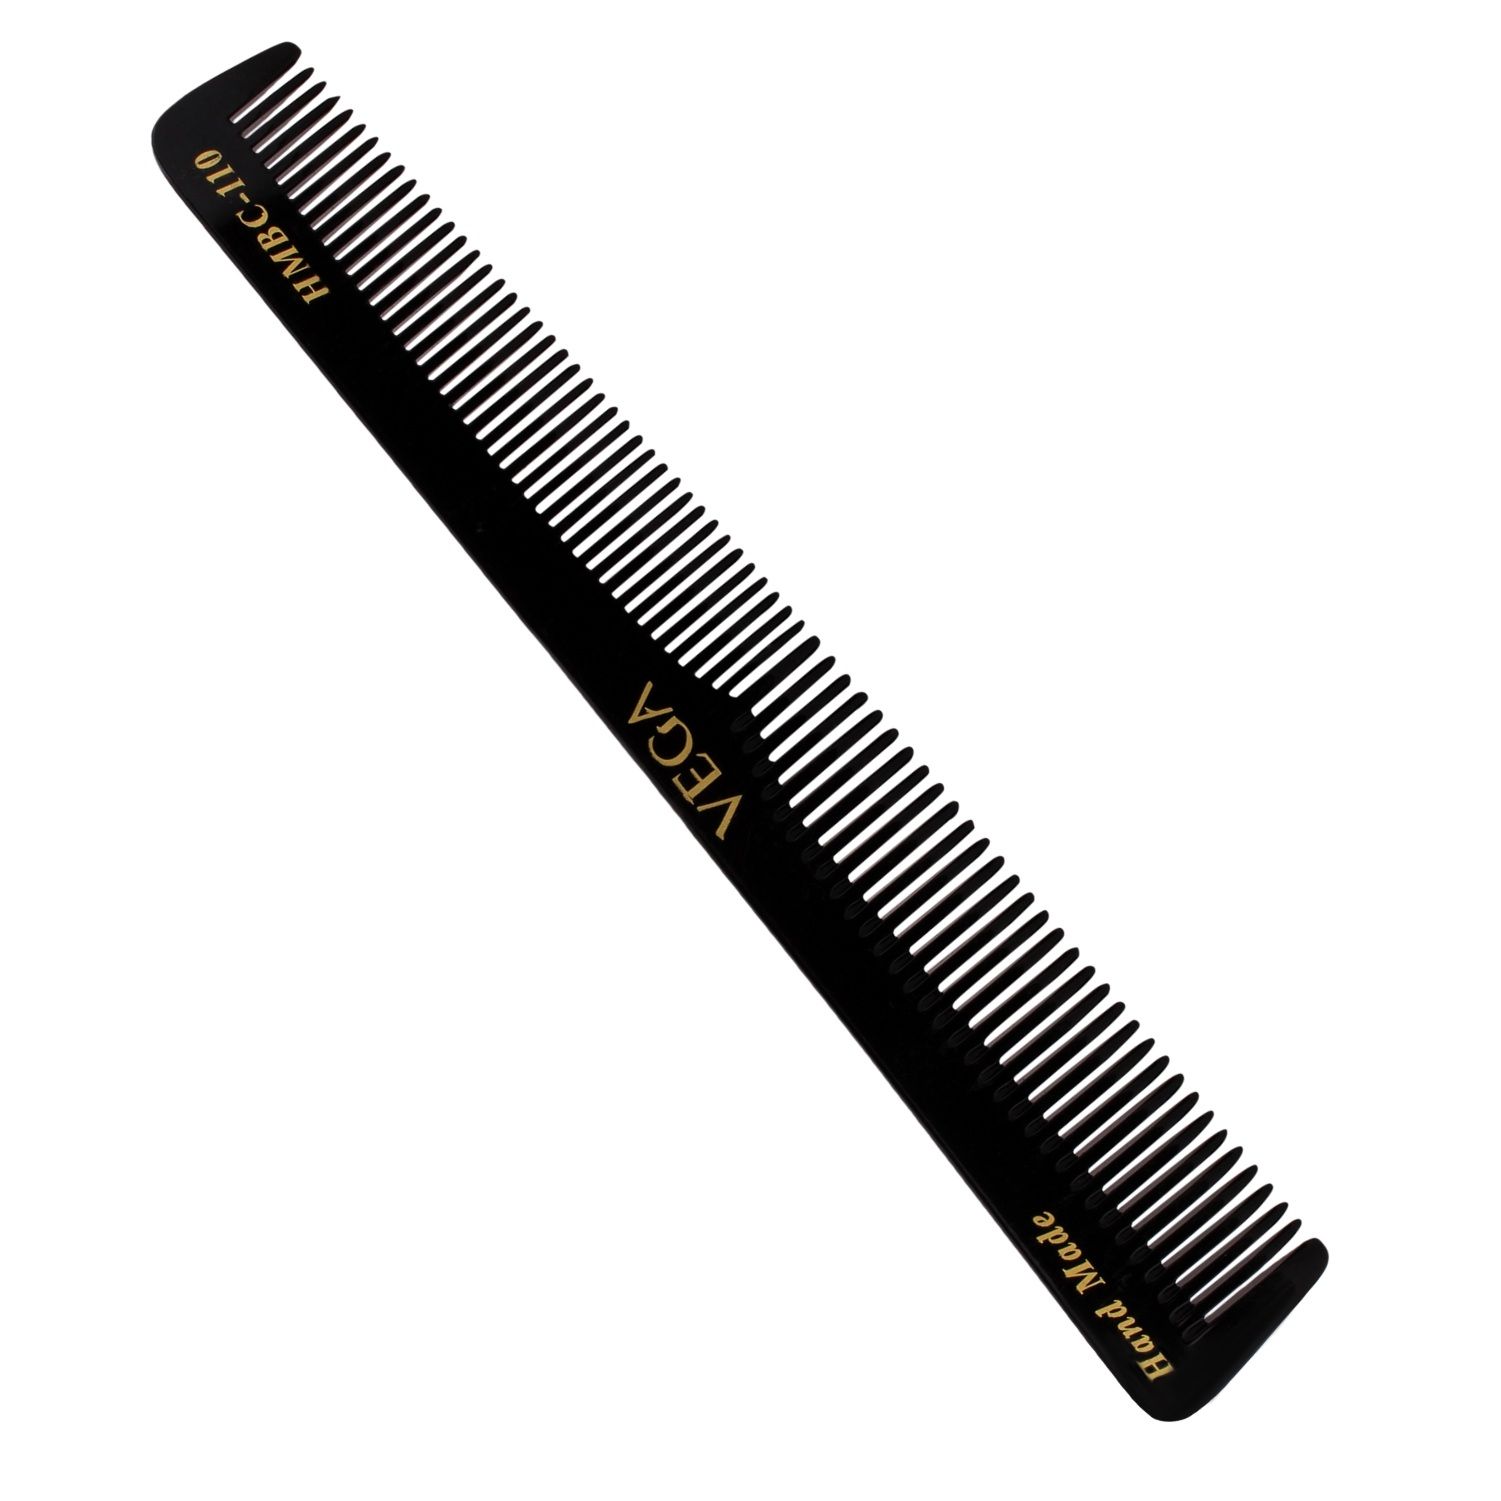 VEGA Handcrafted Black Comb (HMBC-110)